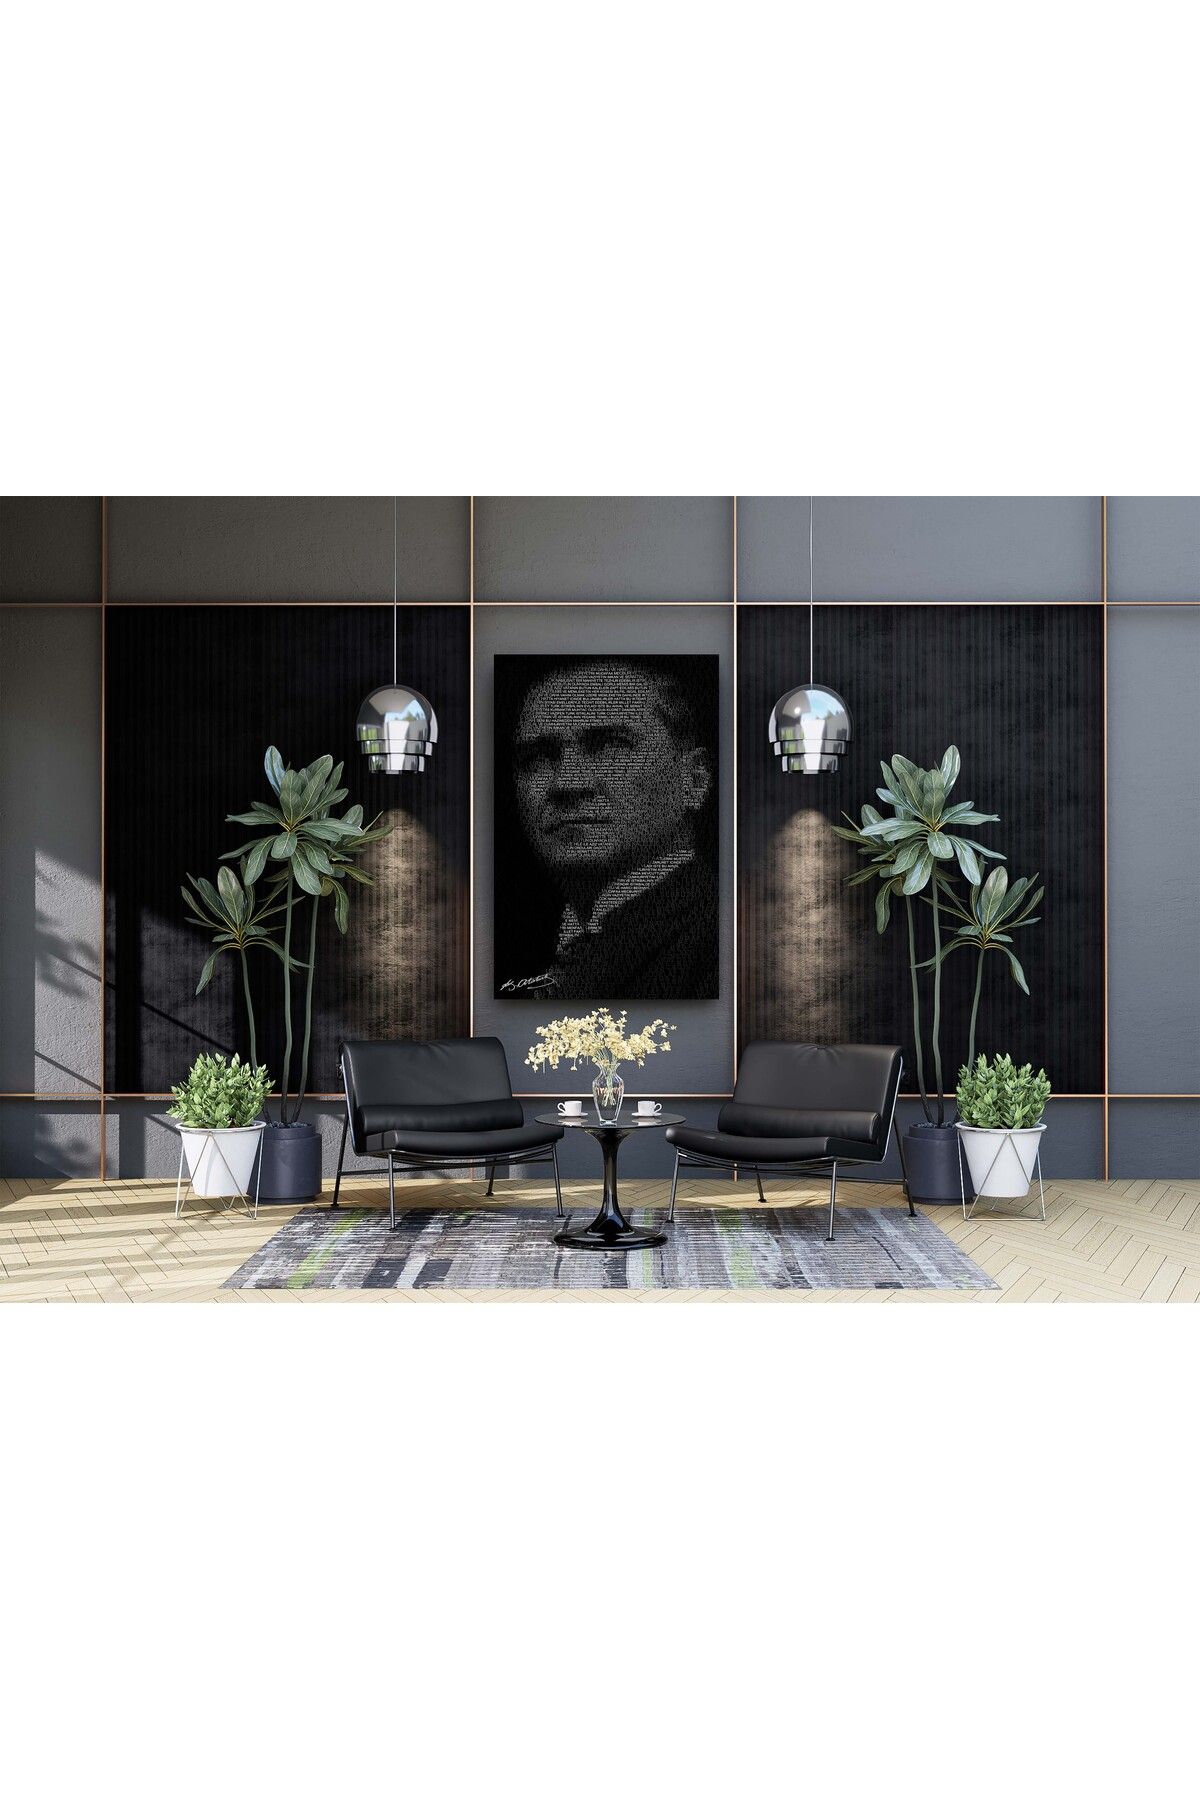 arzuönler Siyah Beyaz Yazılı Atatürk Dekoratif Kanvas Tablo